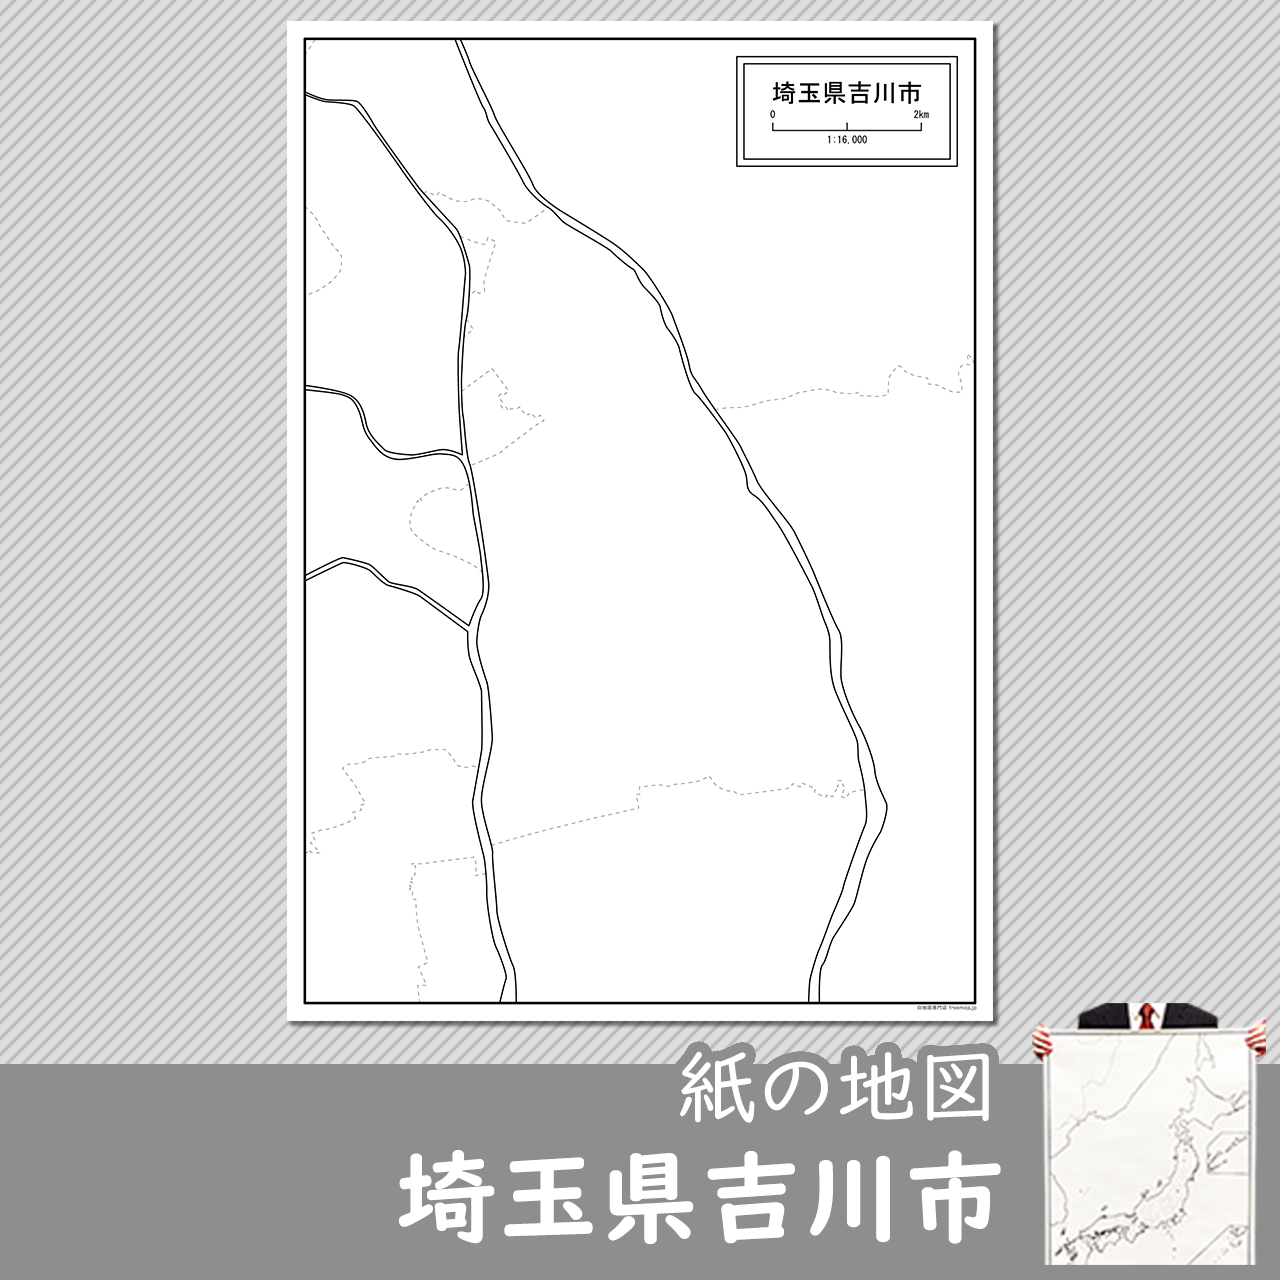 吉川市の紙の白地図のサムネイル